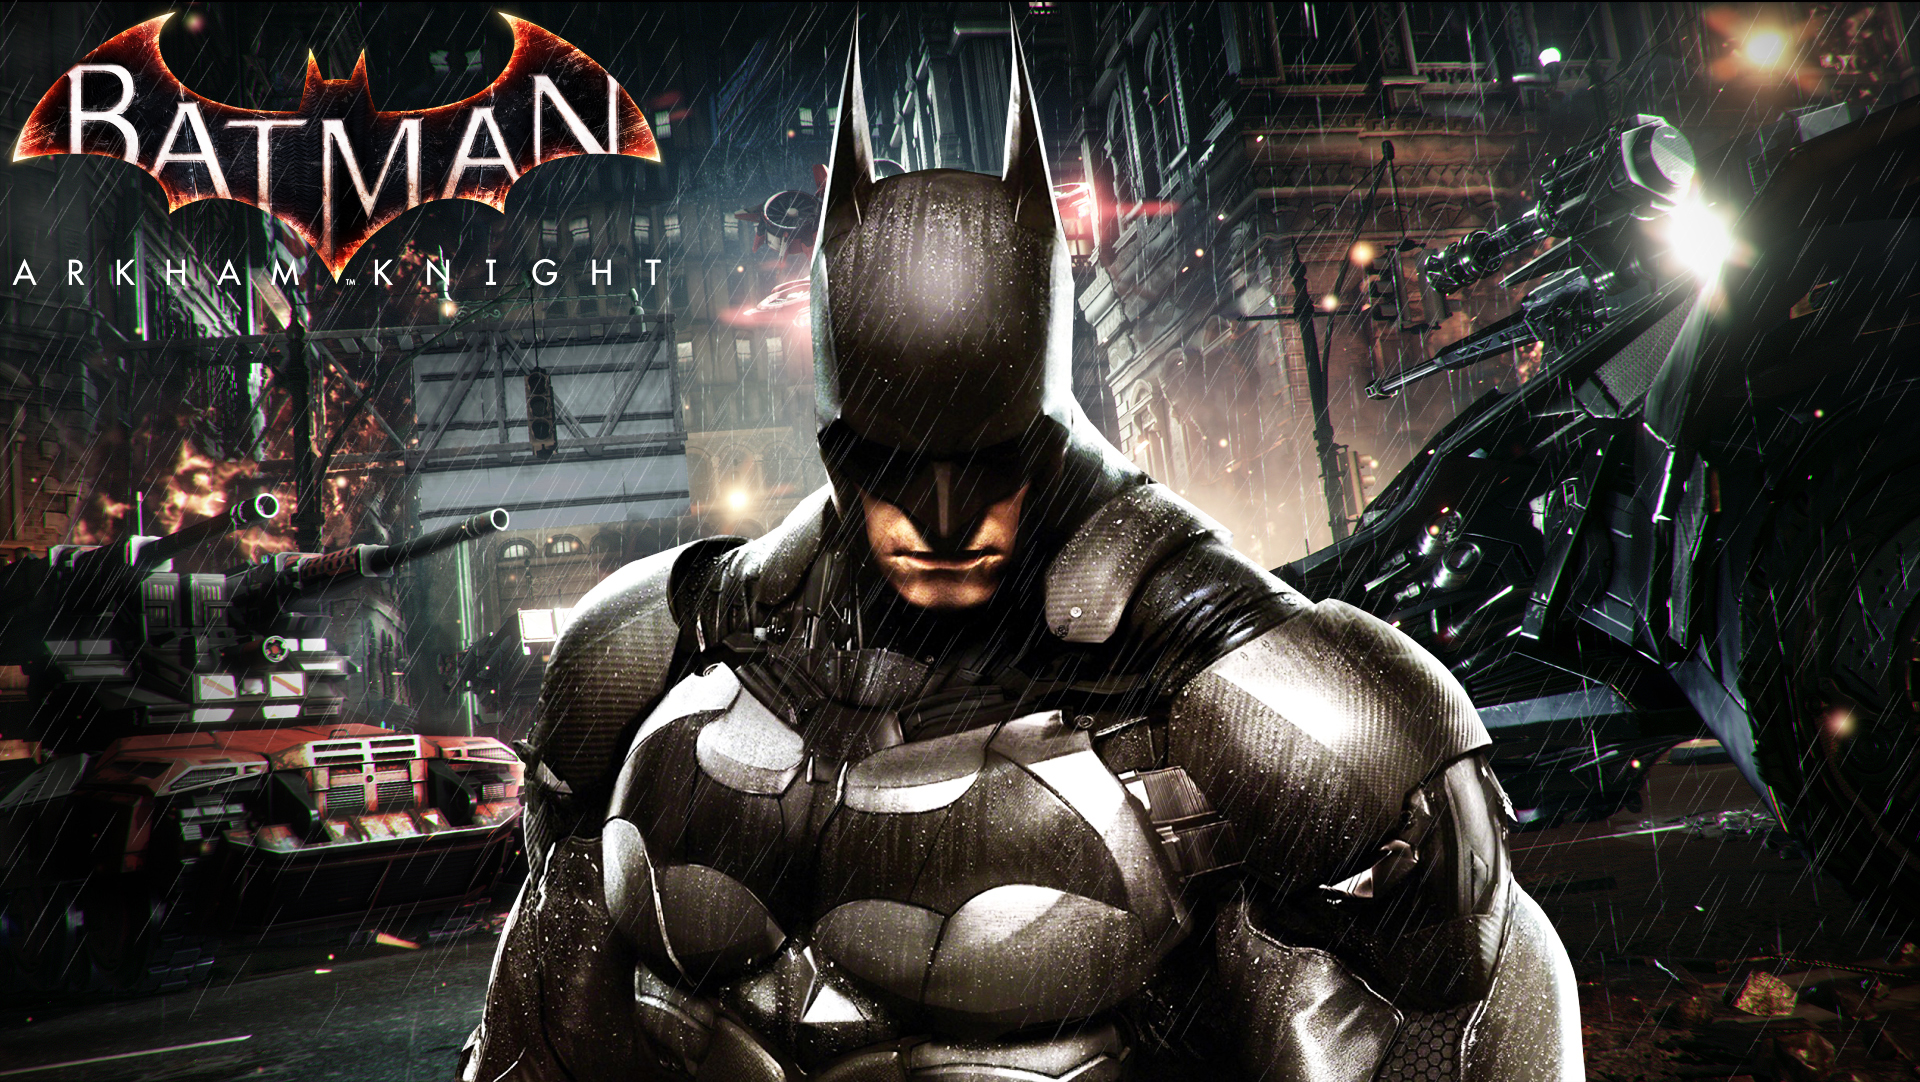 DC Batman wallpaper #Batman #superhero Batman: Arkham Knight video games  #720P #wallpaper …